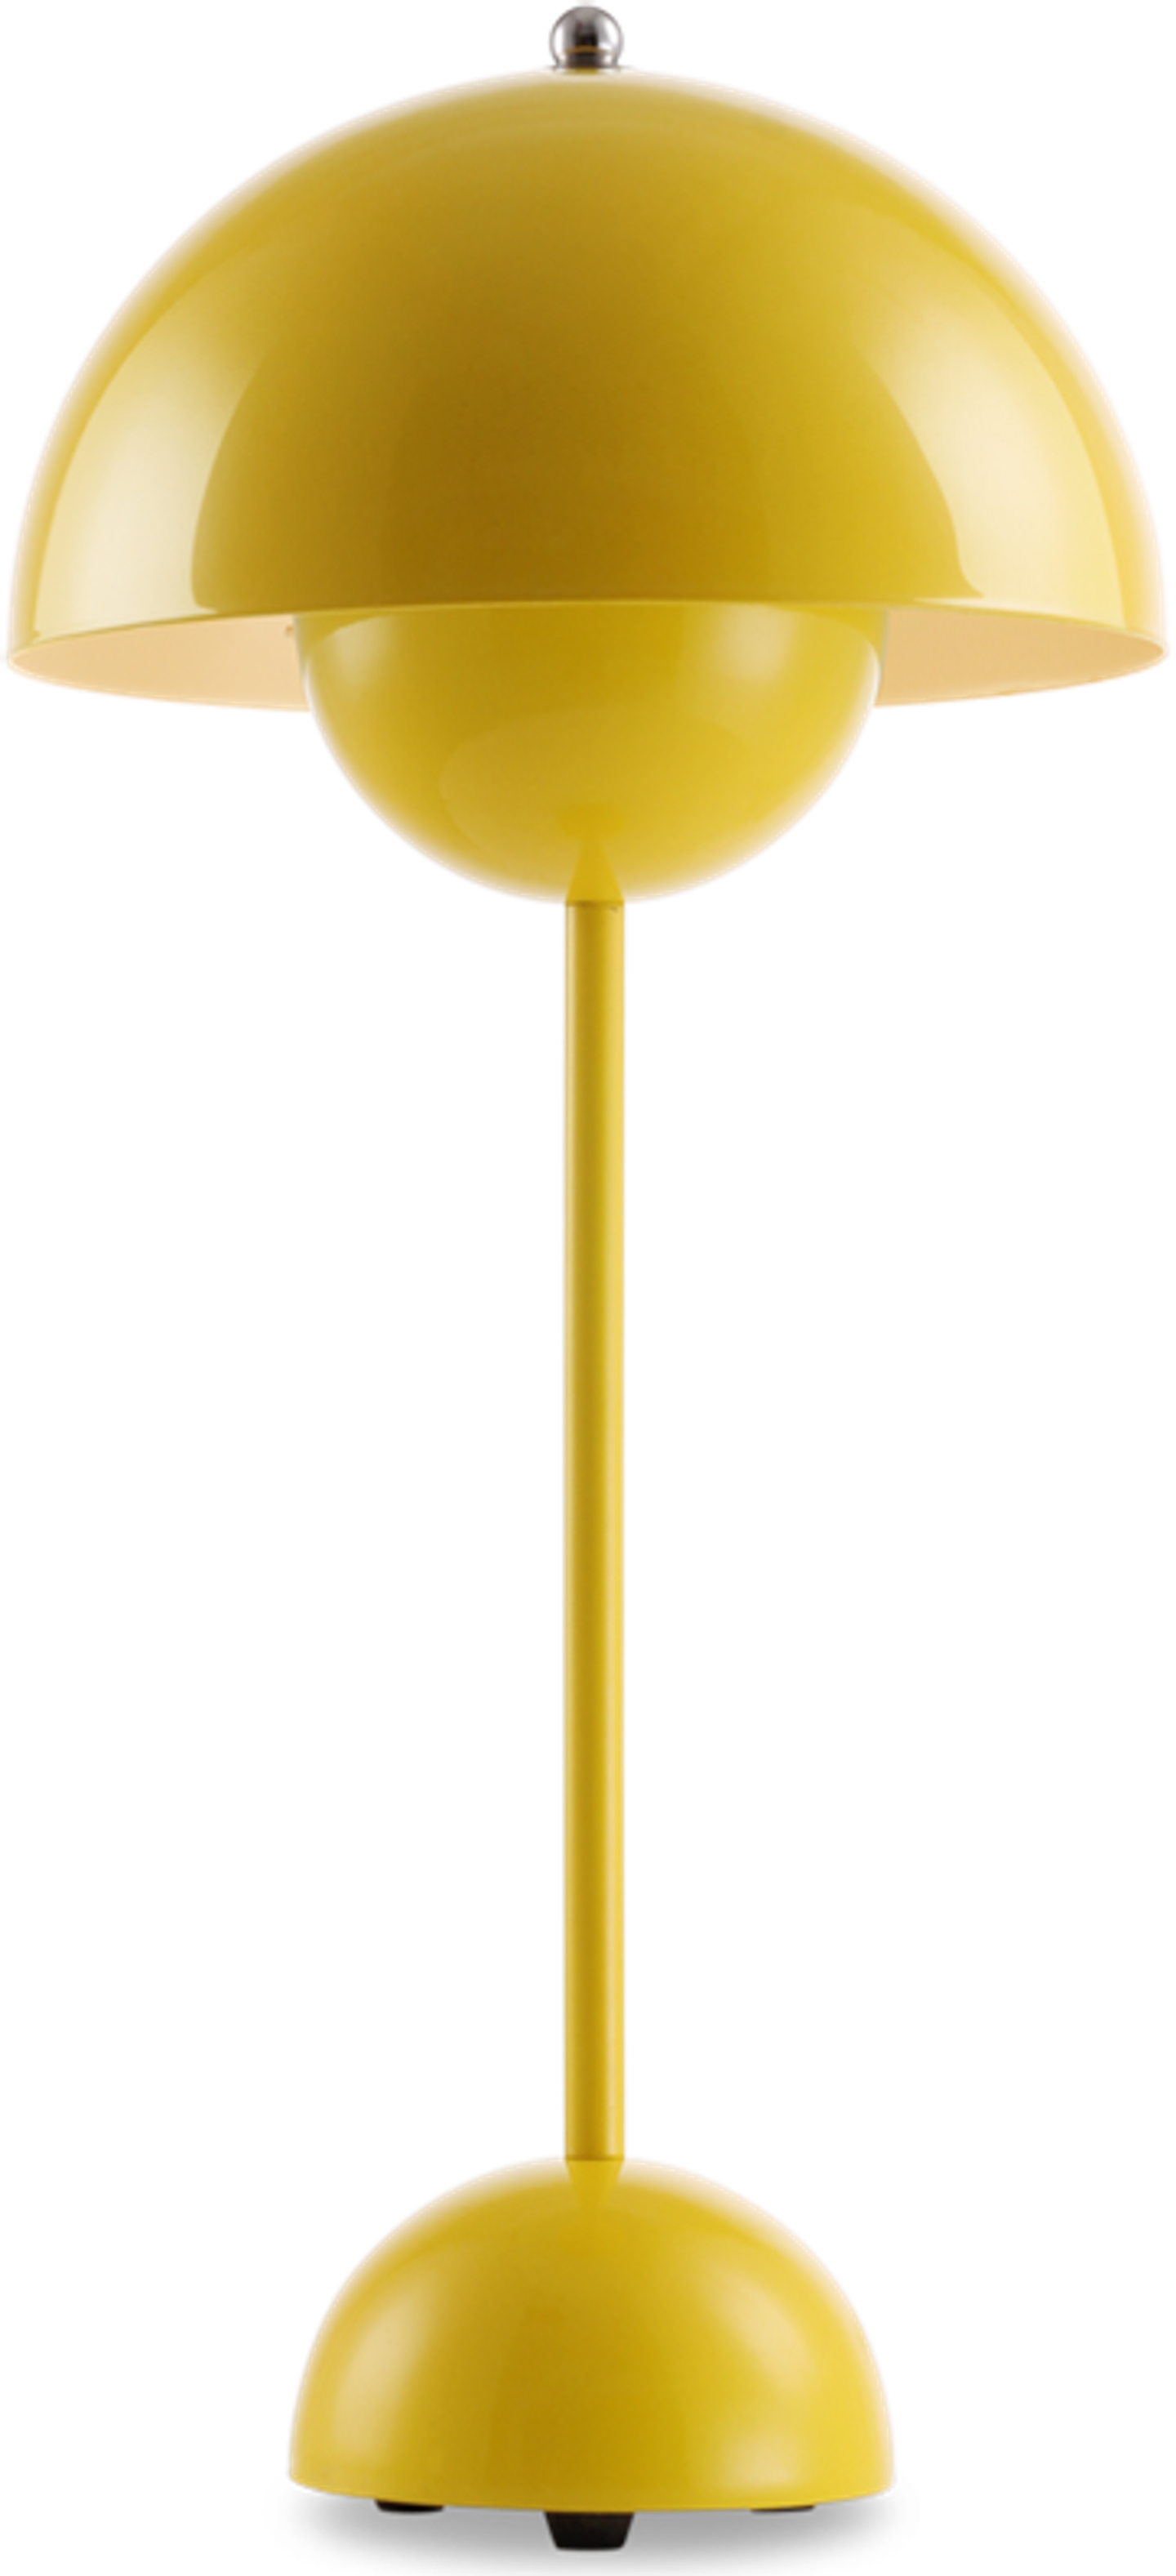 Lampe de table style pot de fleurs Yellow image.